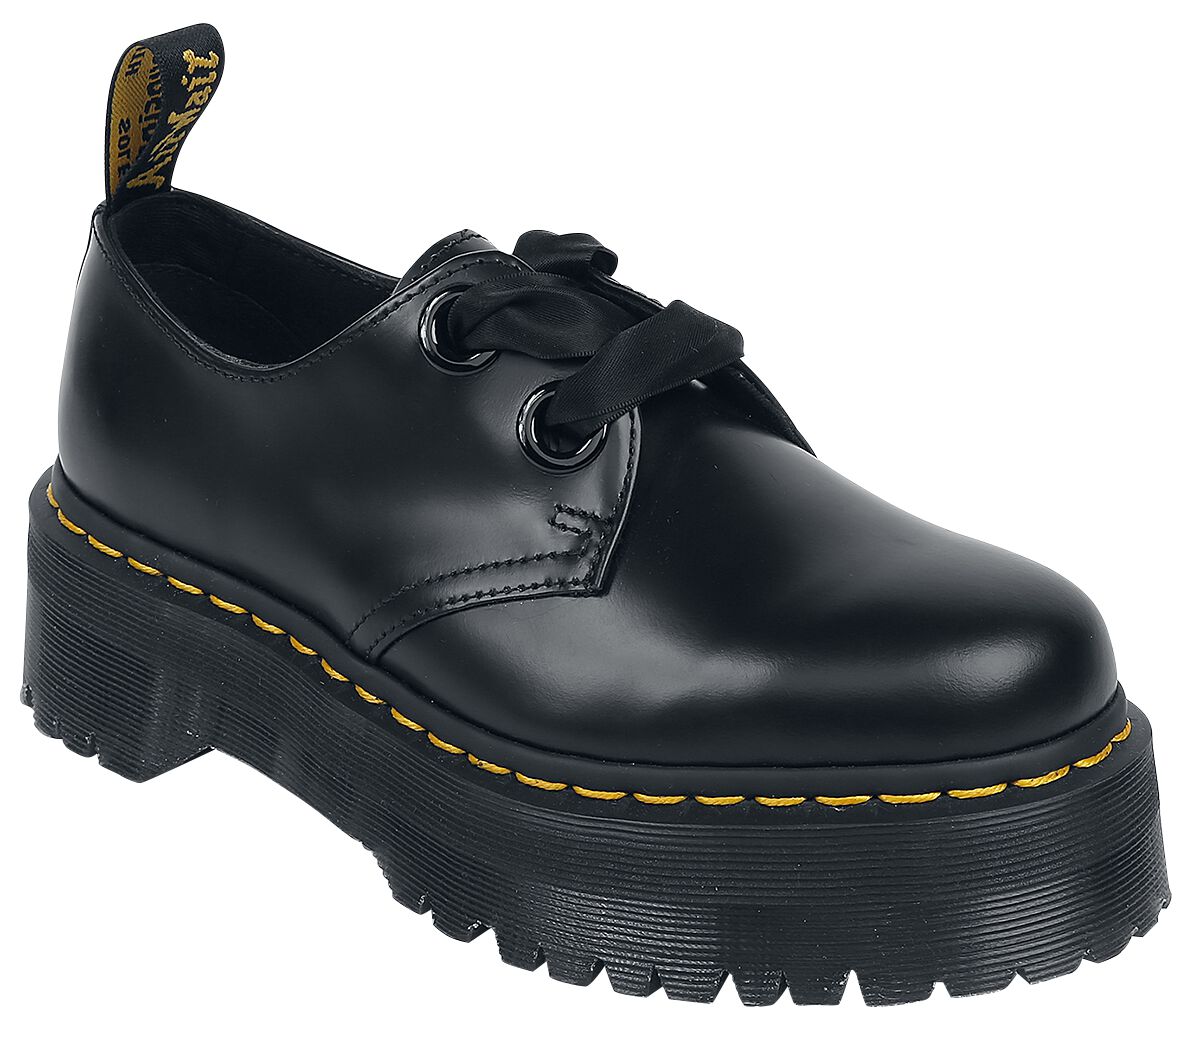 Chaussures à lacets Rockabilly de Dr. Martens - Holly Buttero - EU39 à EU43 - pour Femme - noir